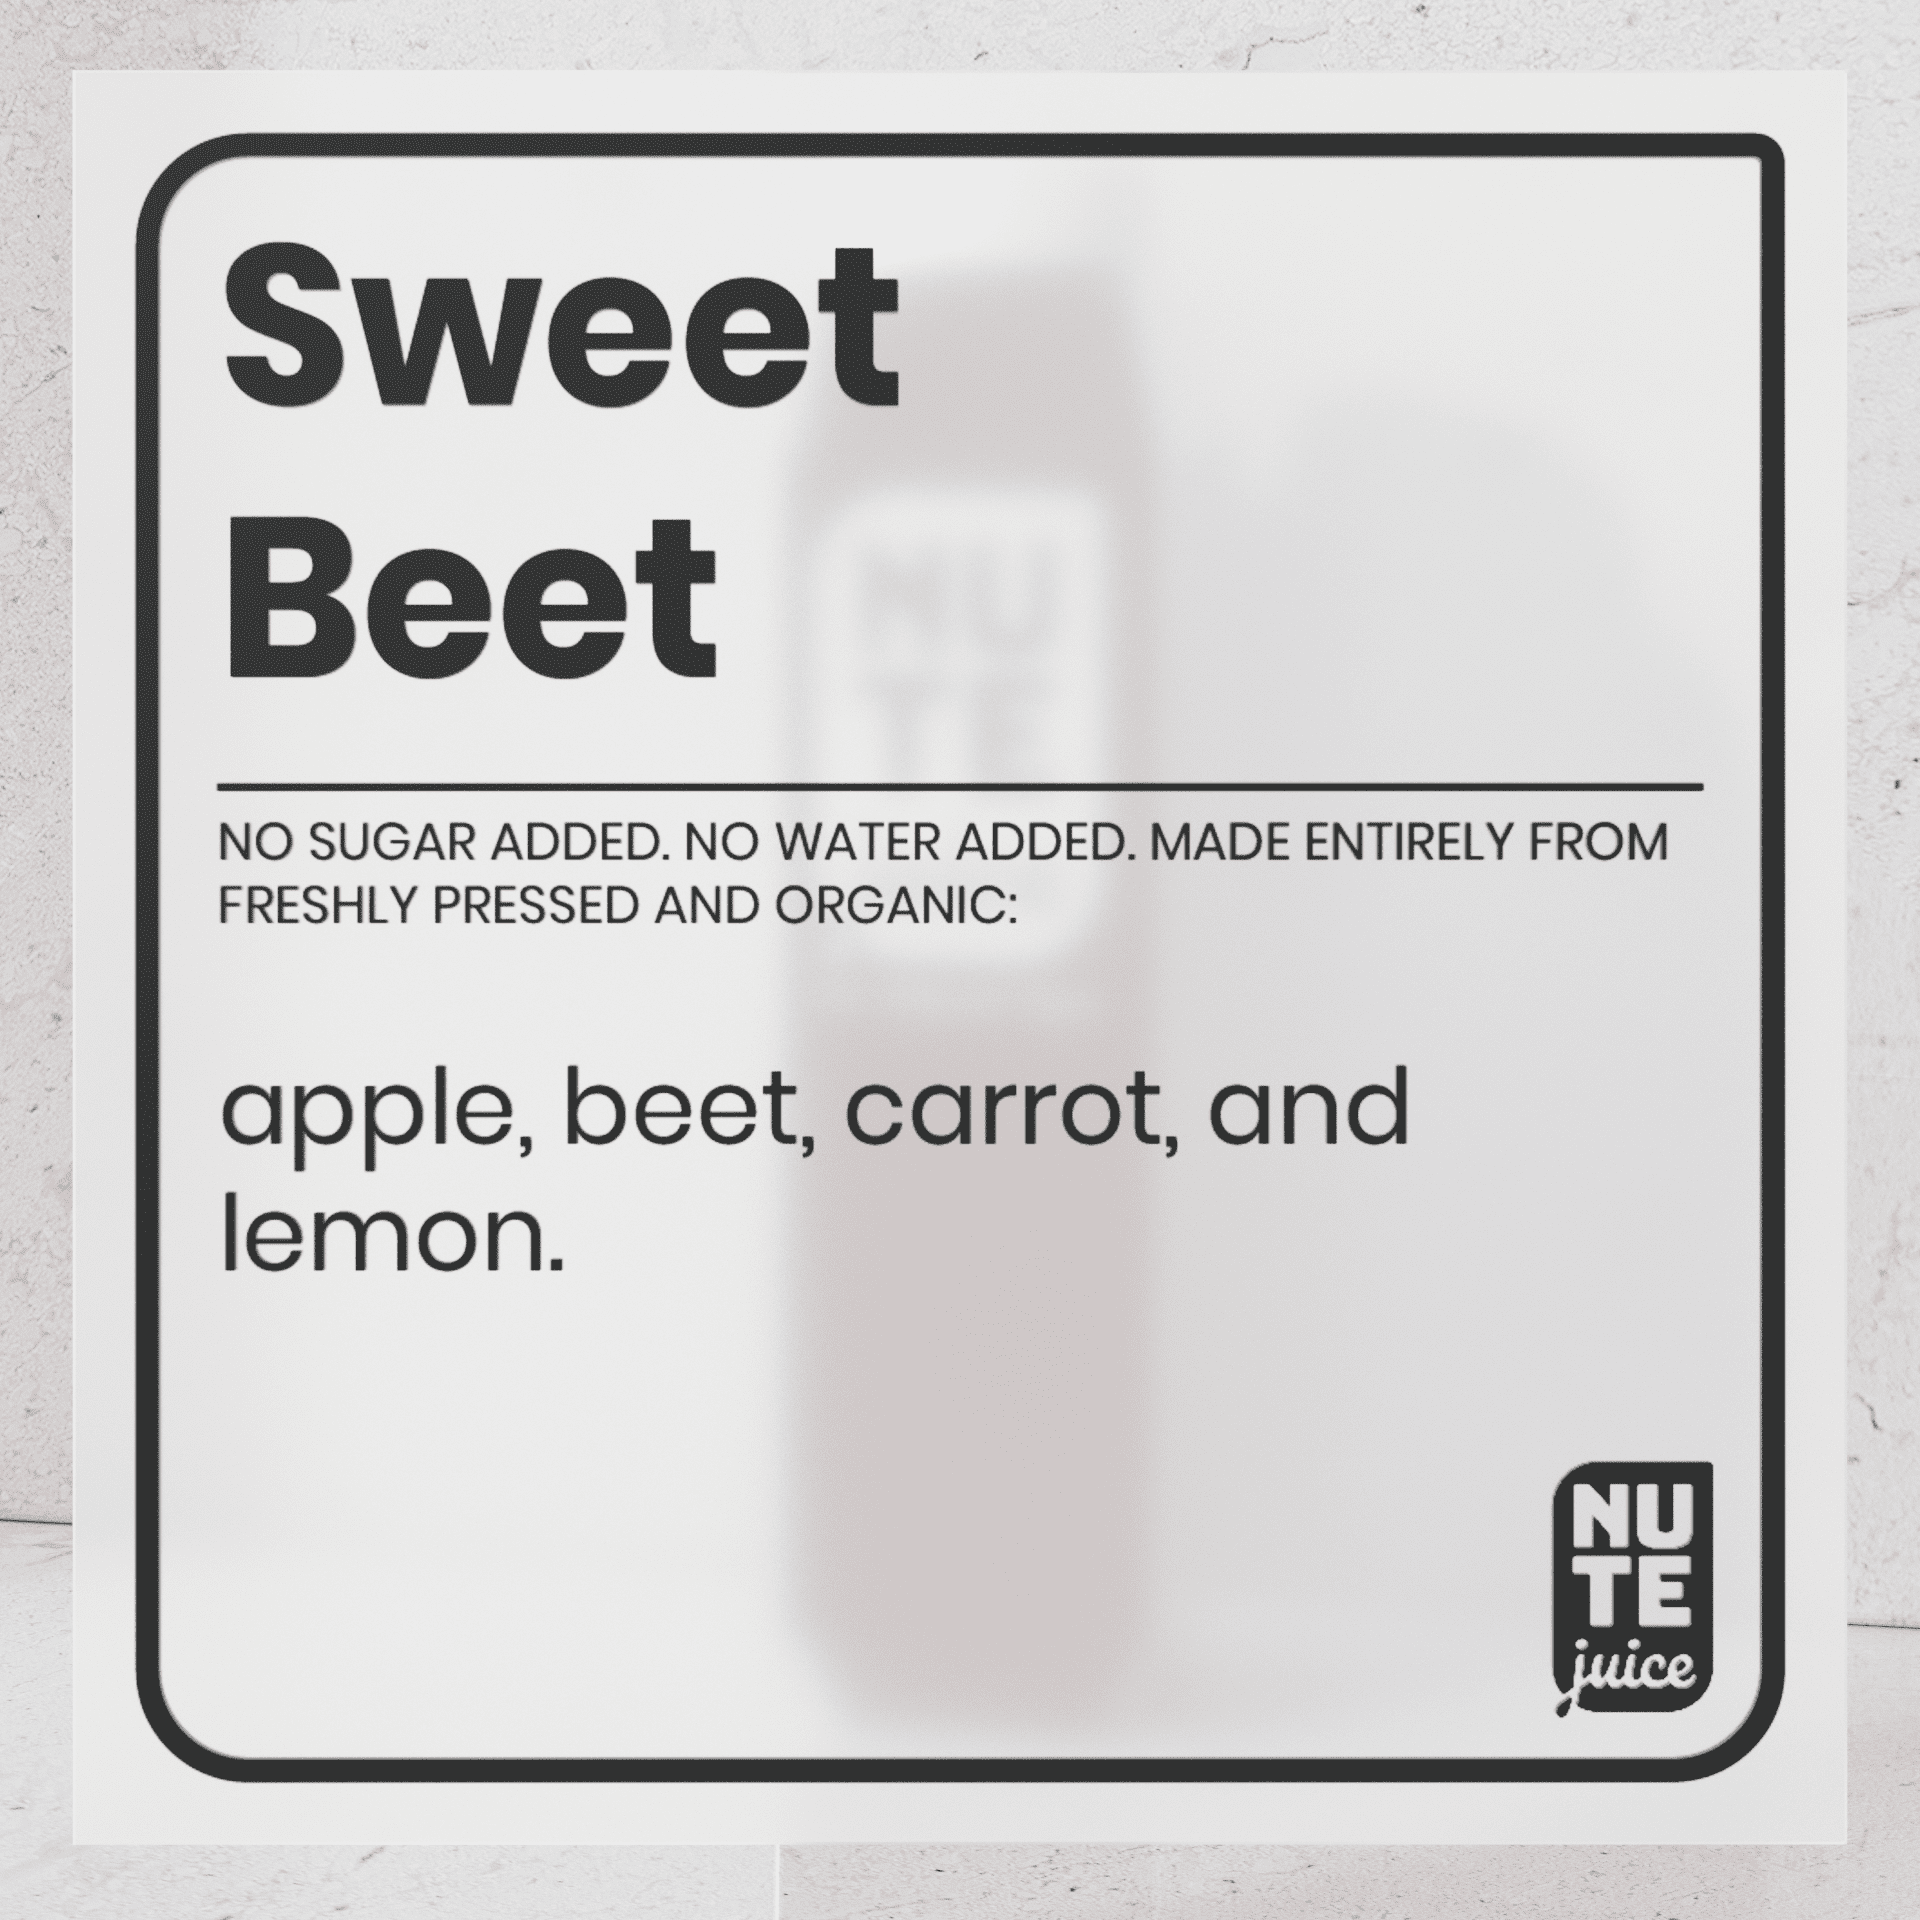 sweet beet ingredients